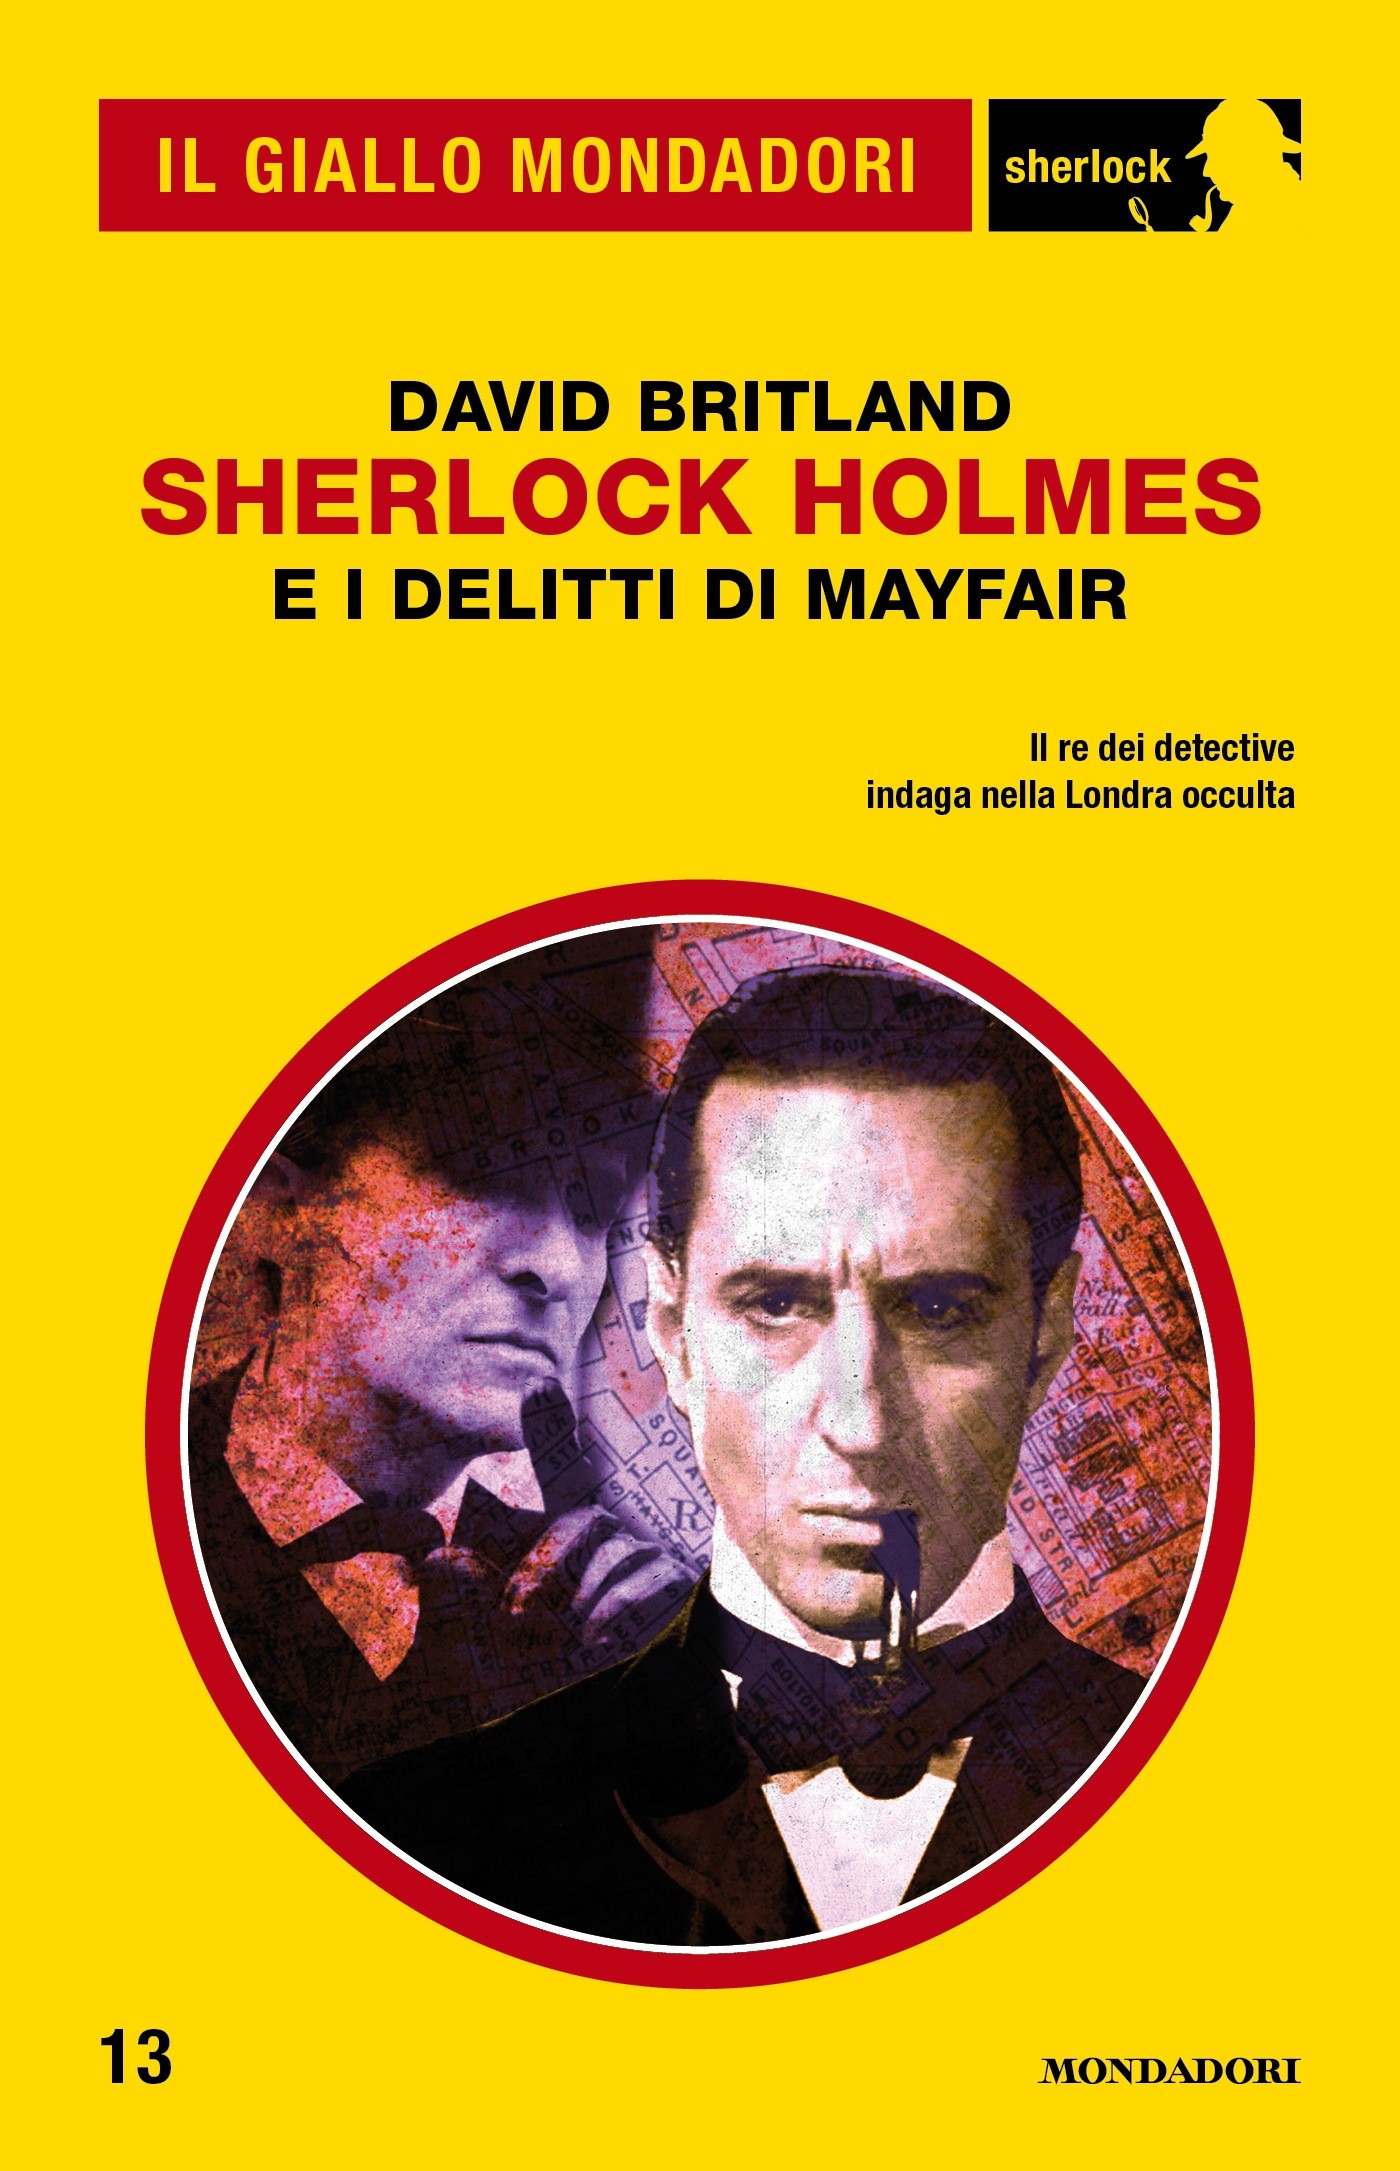 Sherlock Holmes e i delitti di Mayfair (Il Giallo Mondadori Sherlock) - Librerie.coop